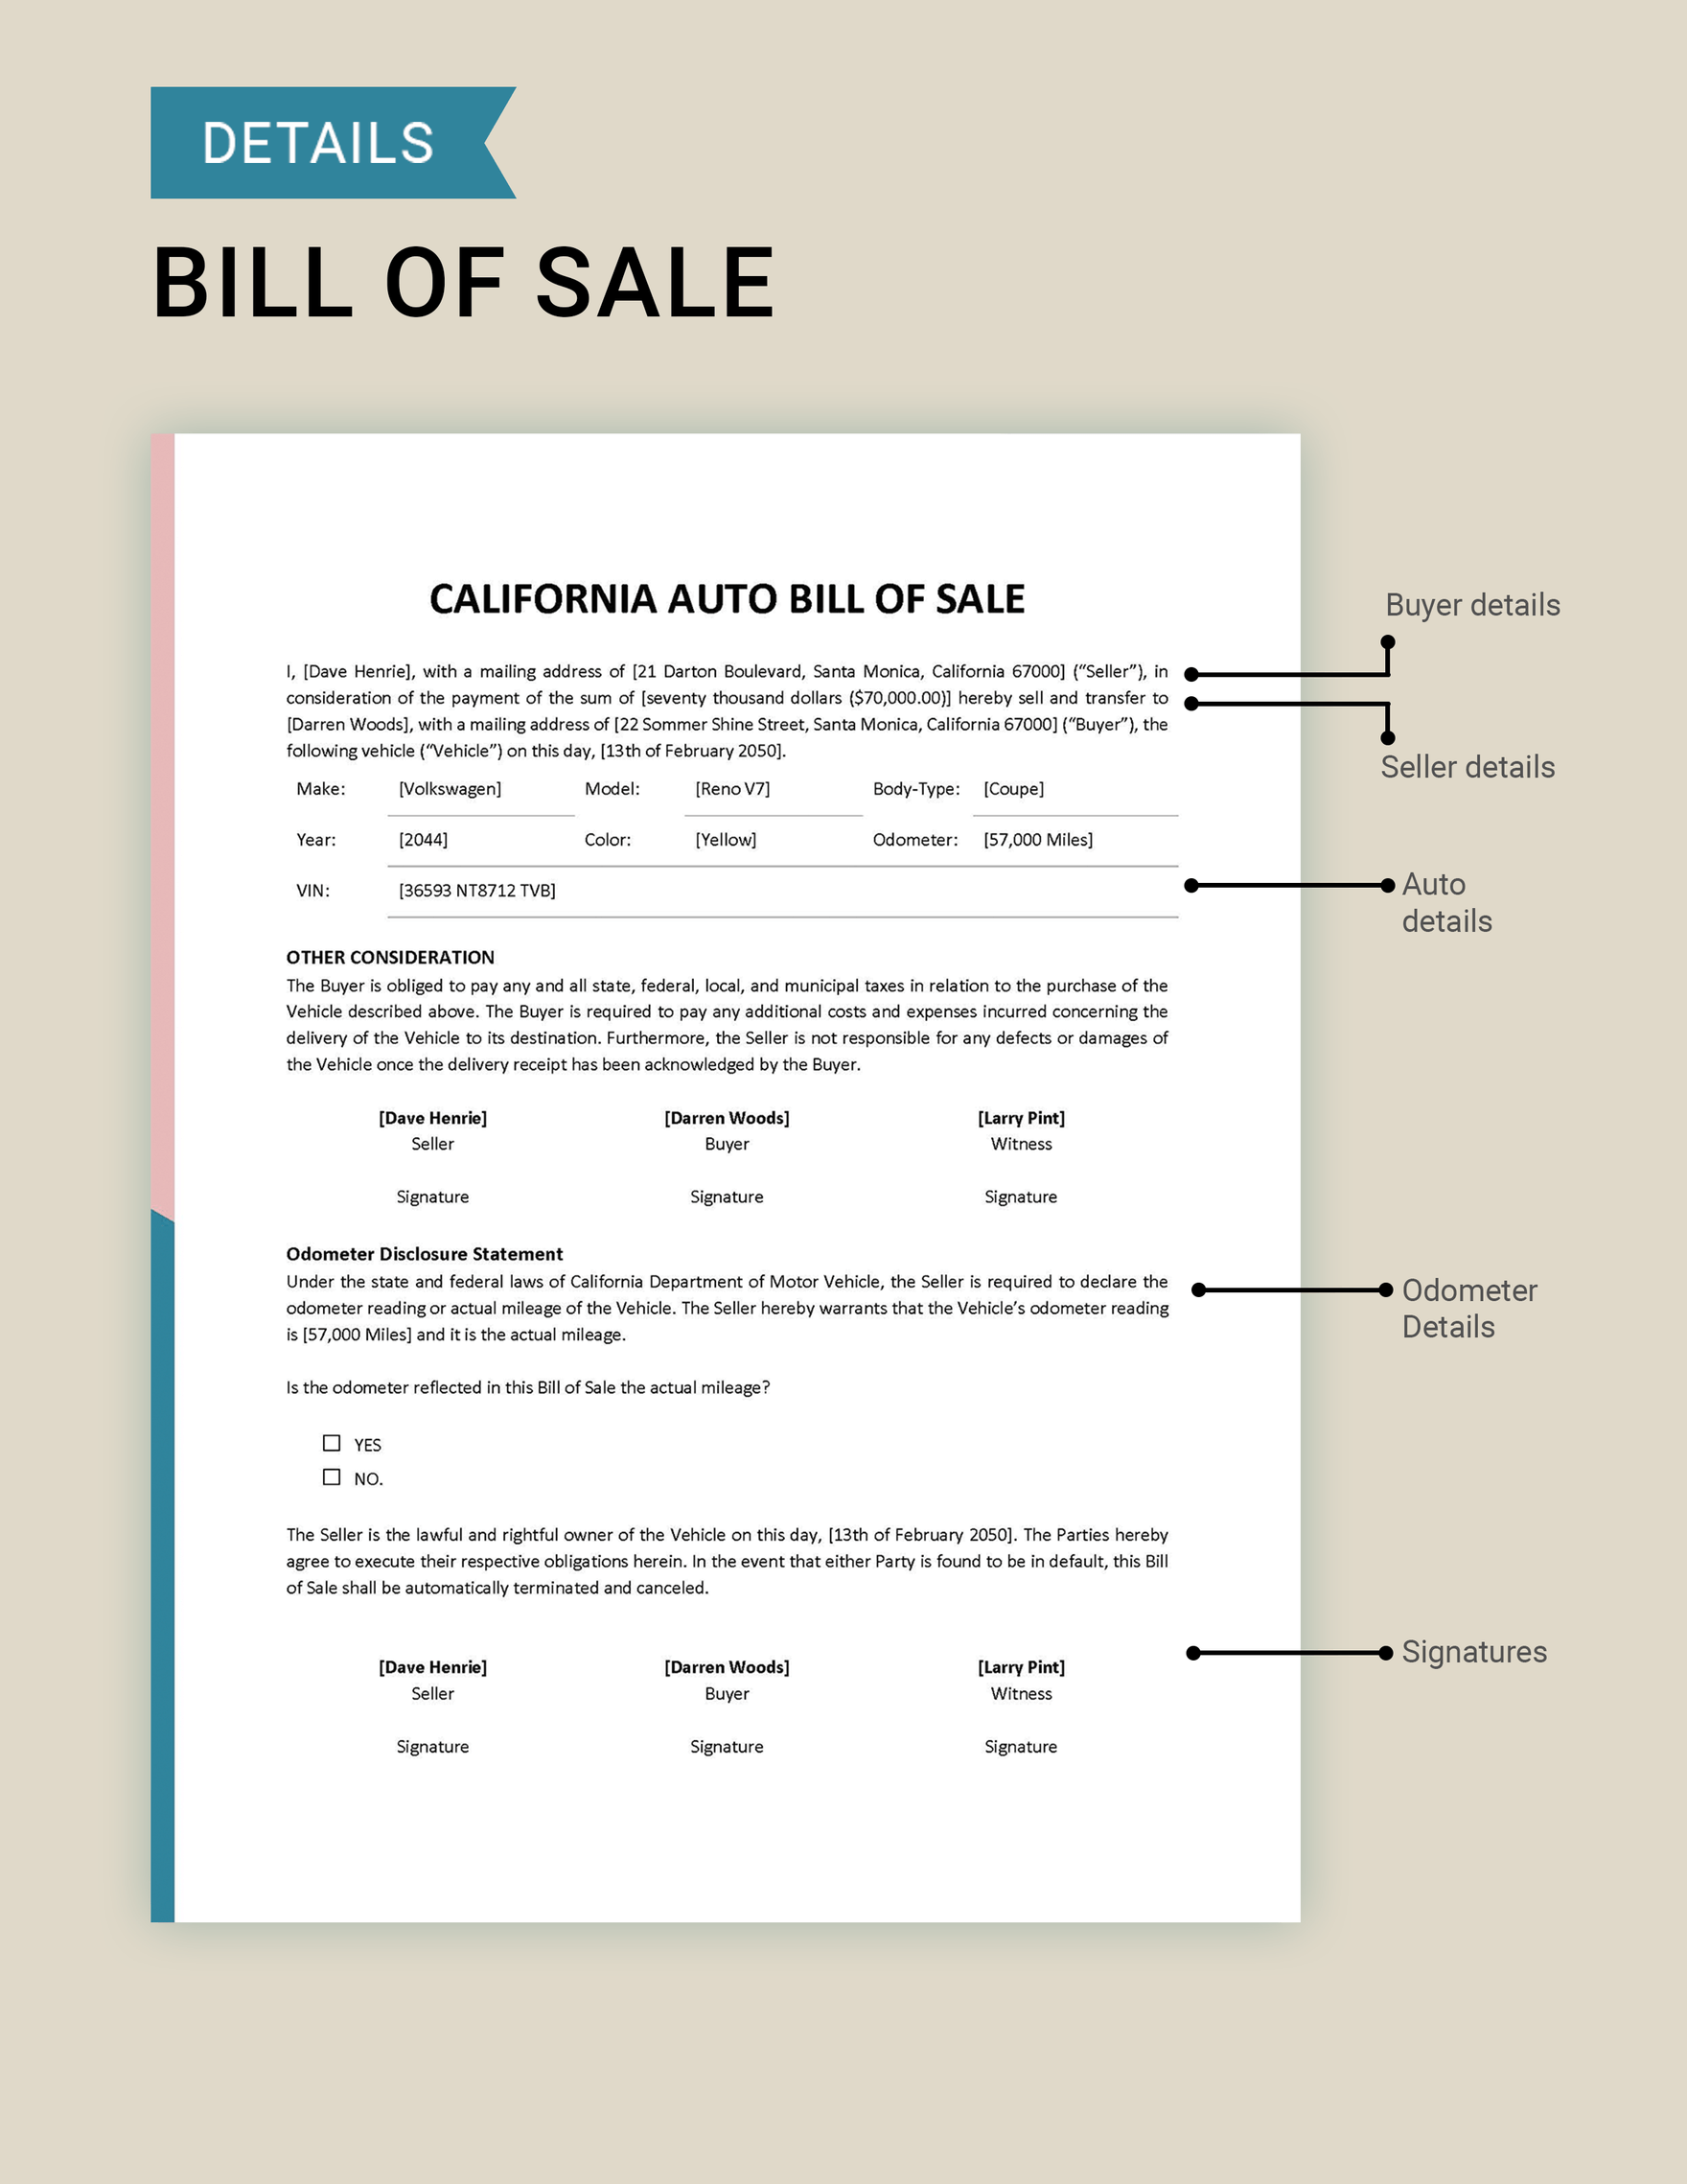 California Auto Bill of Sale Template